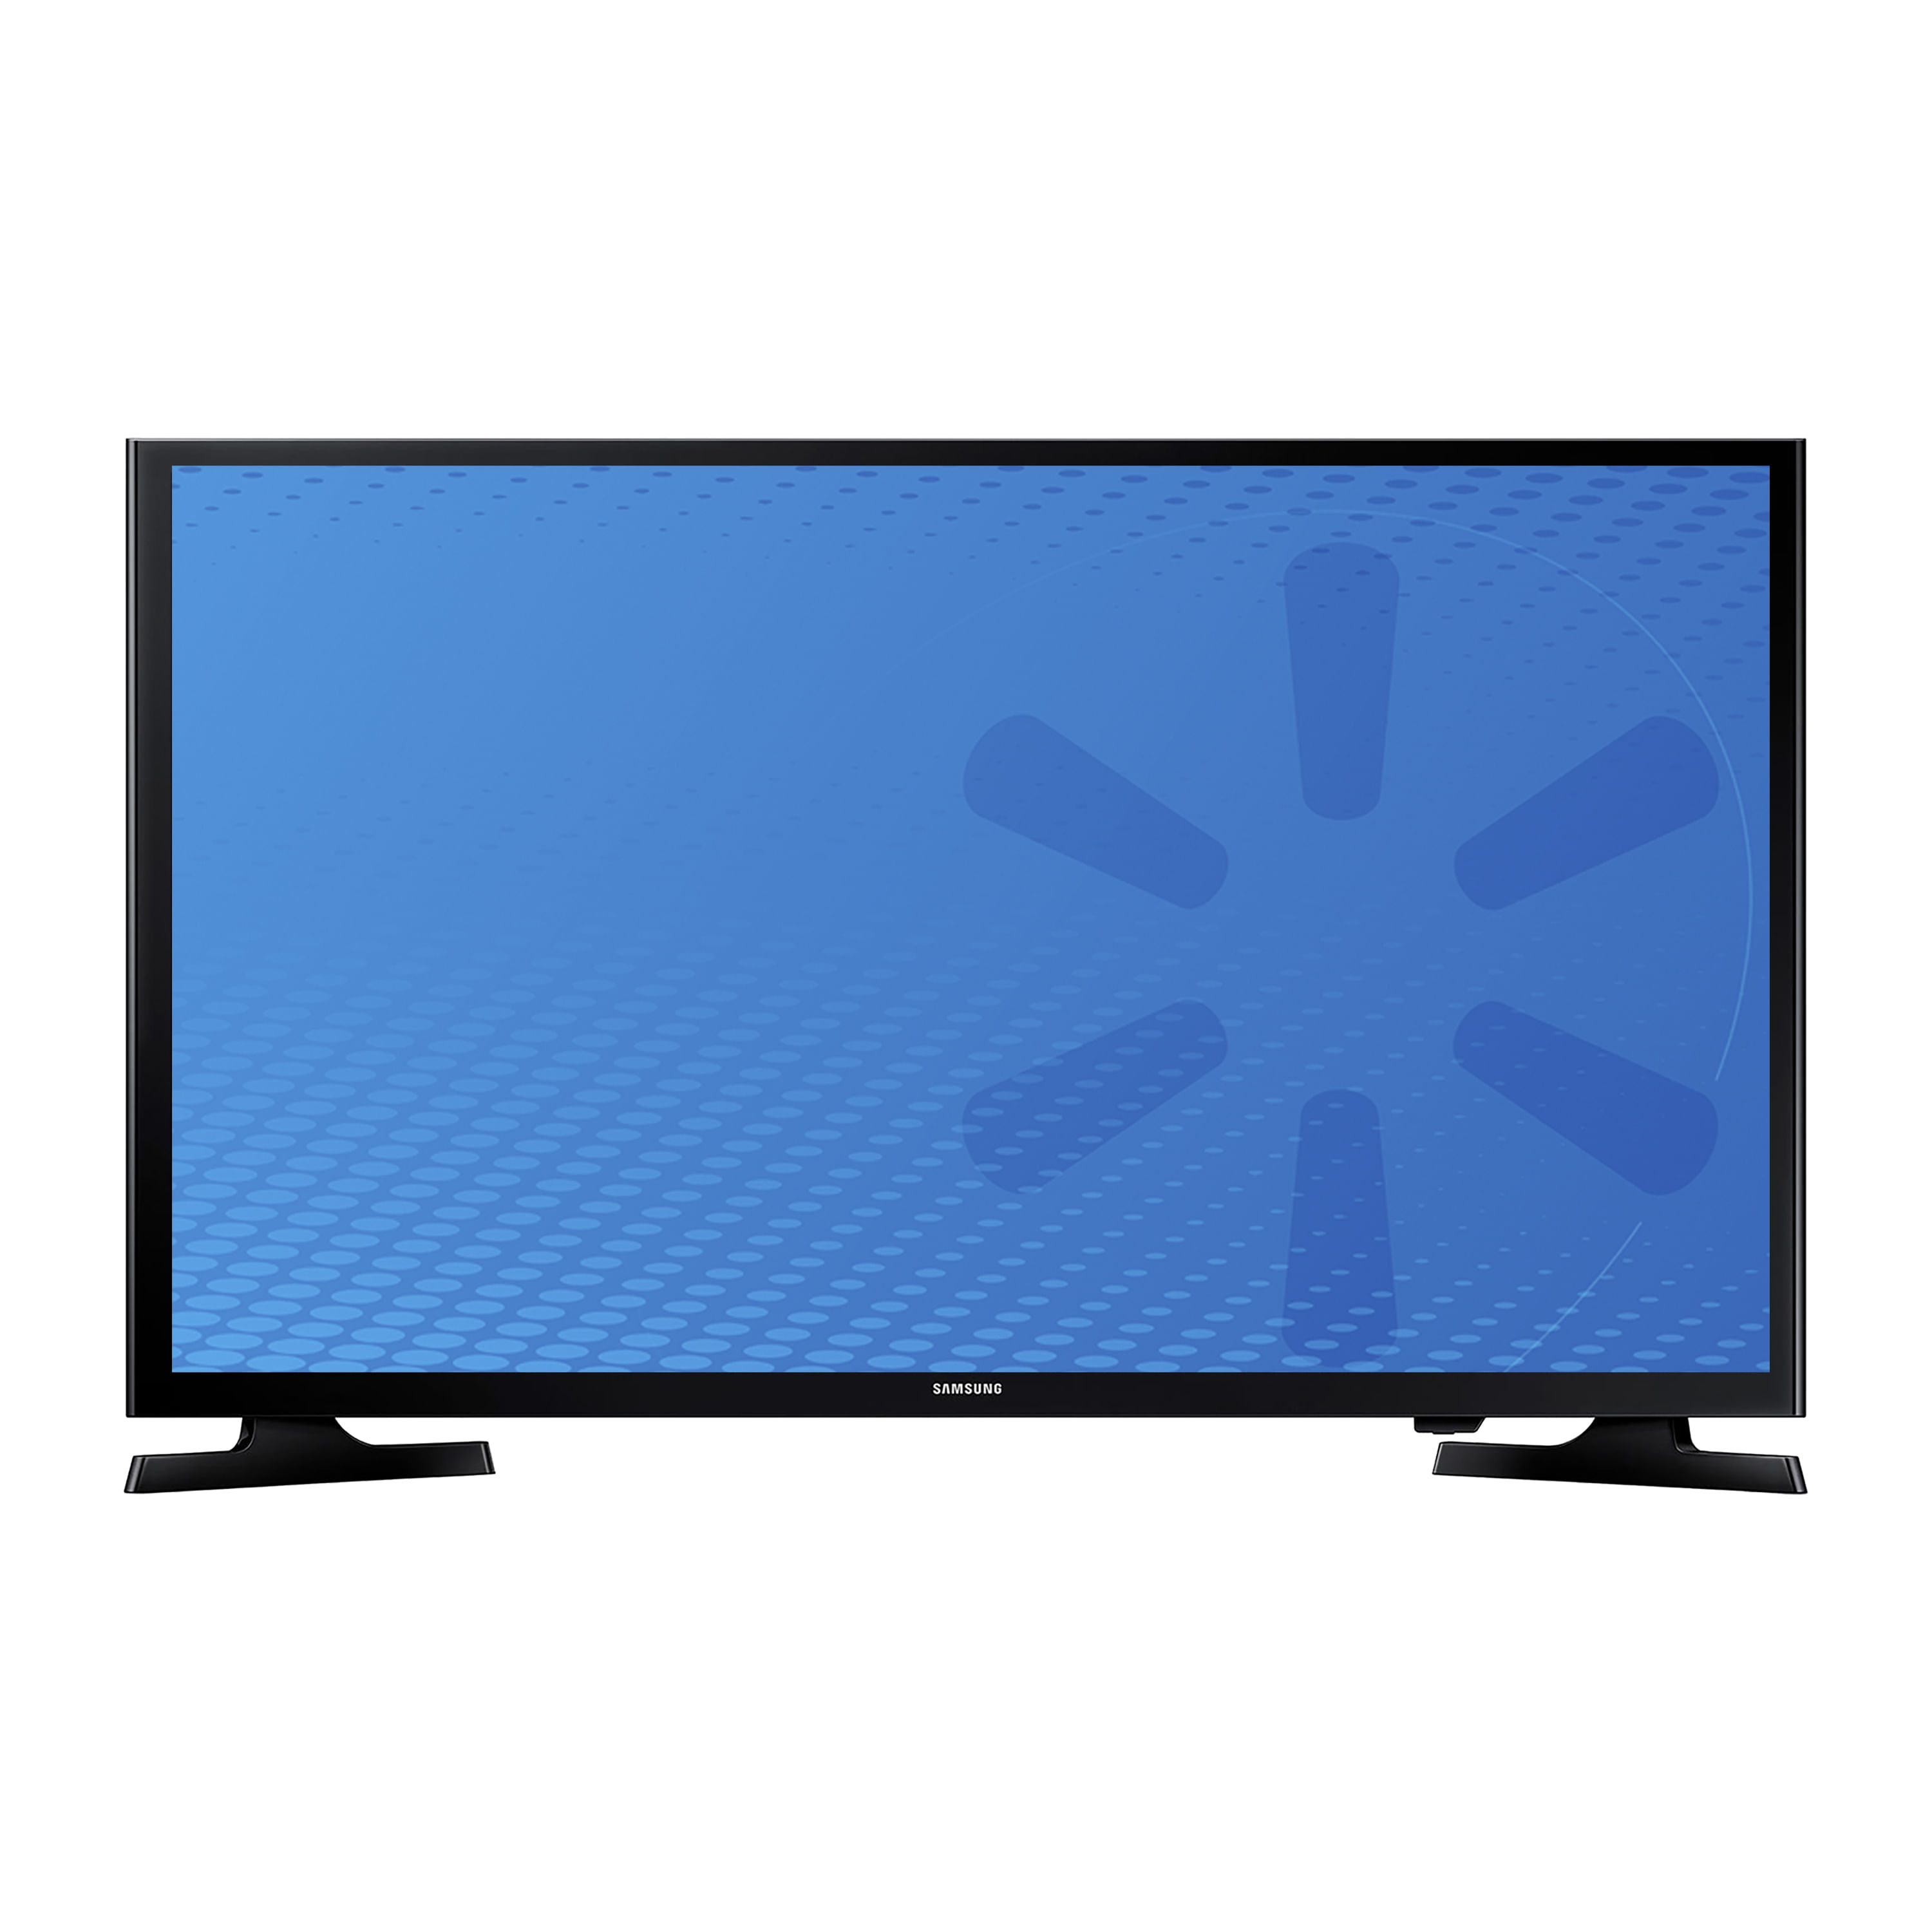 Comprar Pantalla Smart TV Samsung Led De 40 Pulgadas, Modelo:UN40N5200, Walmart Guatemala - Maxi Despensa